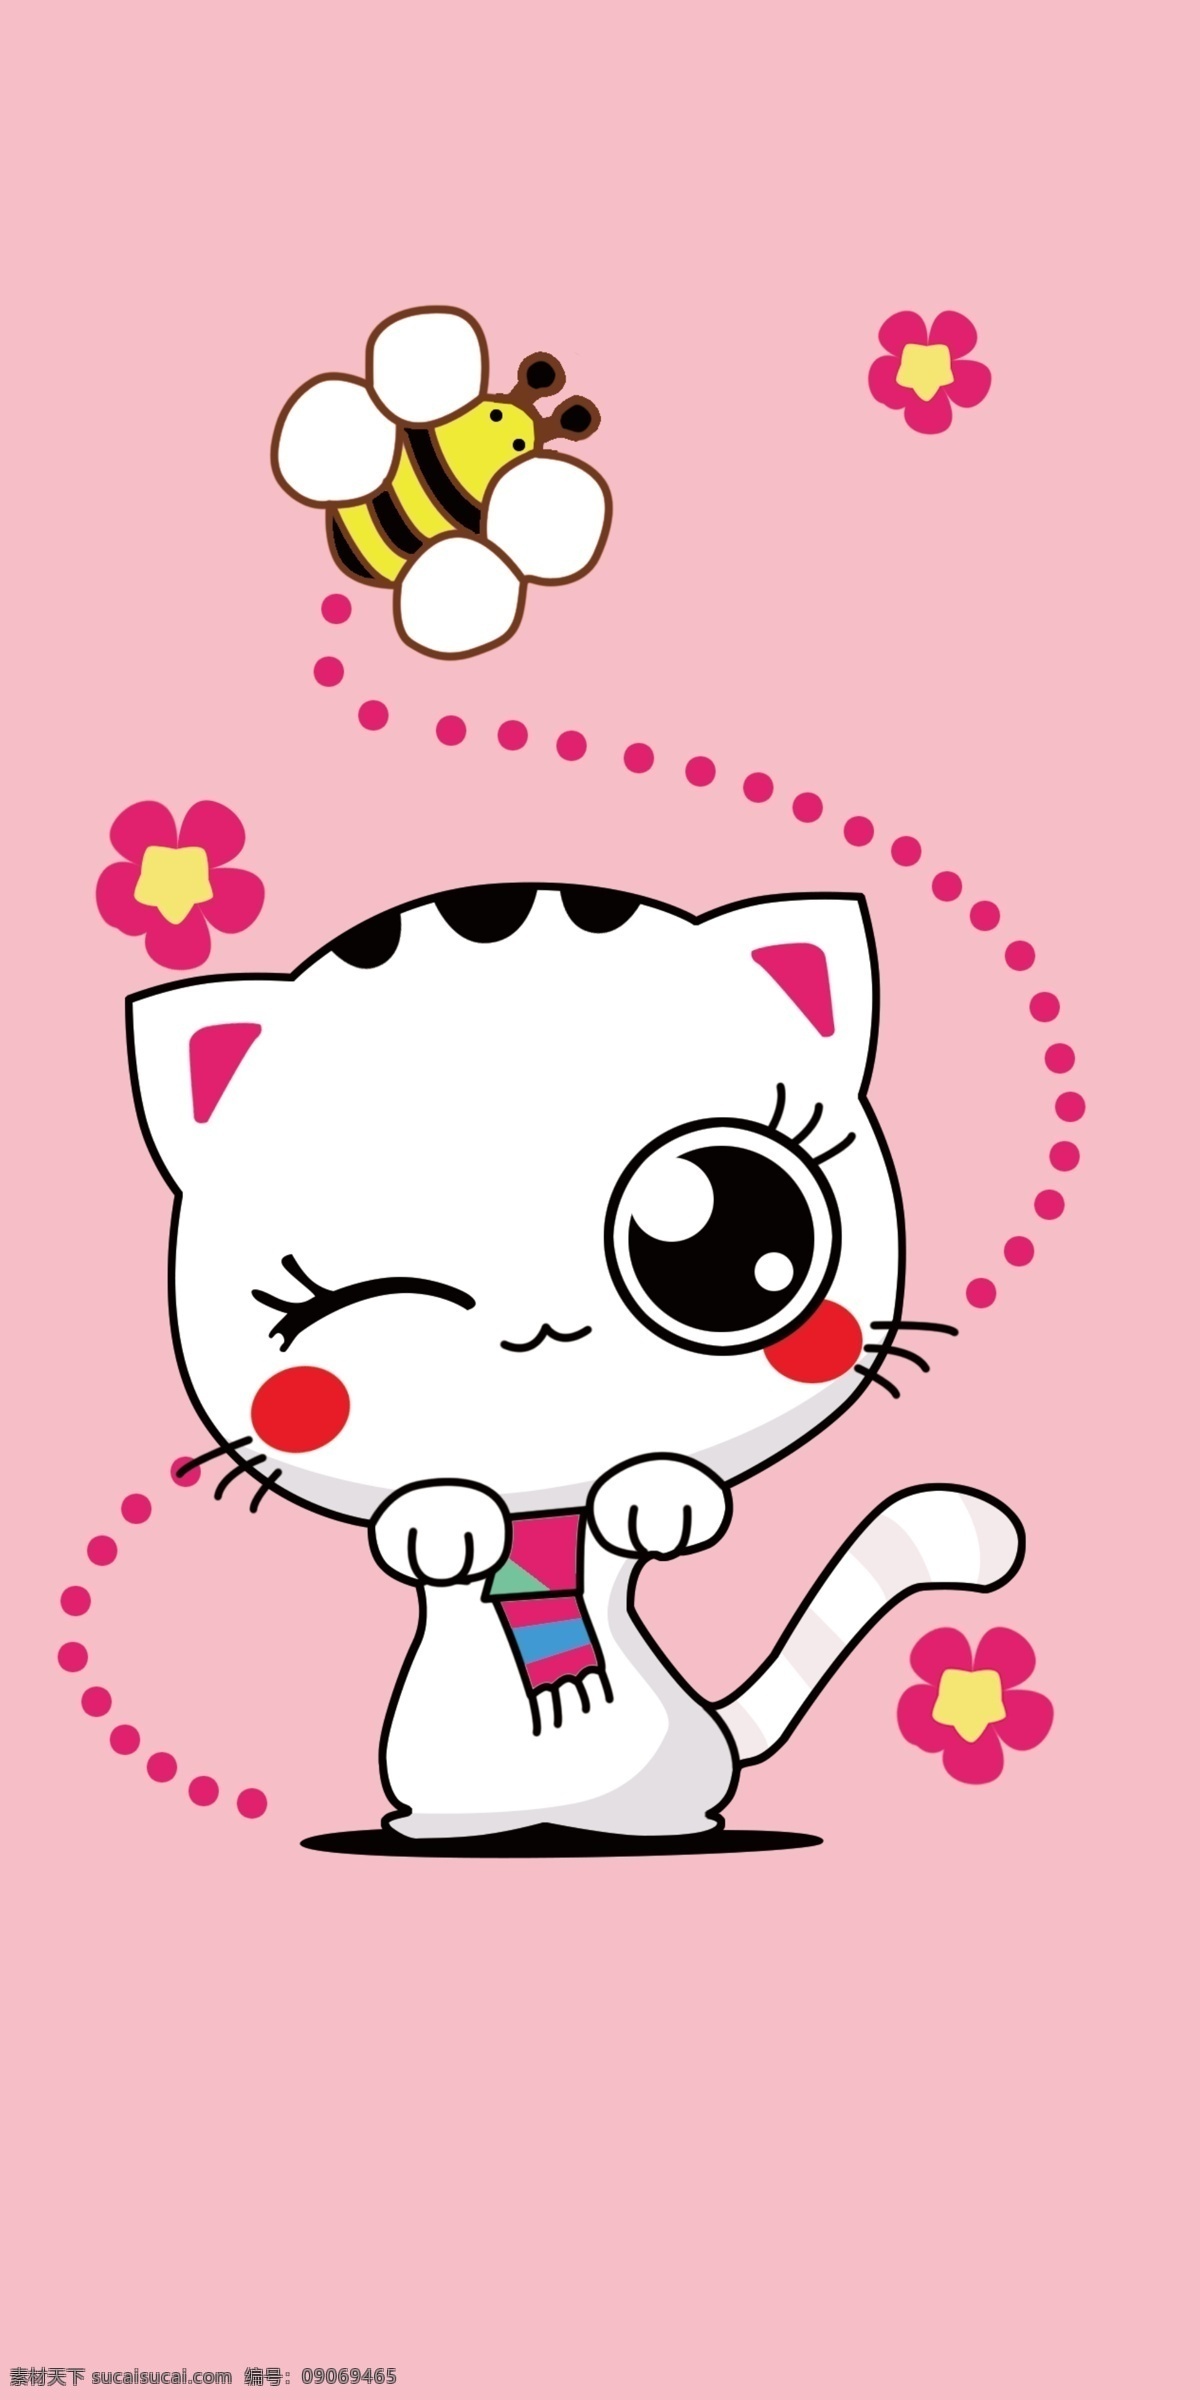 可爱手机壳 猫咪 卡通小猫咪 手机壳设计 卡通手机壳 动漫动画 动漫人物